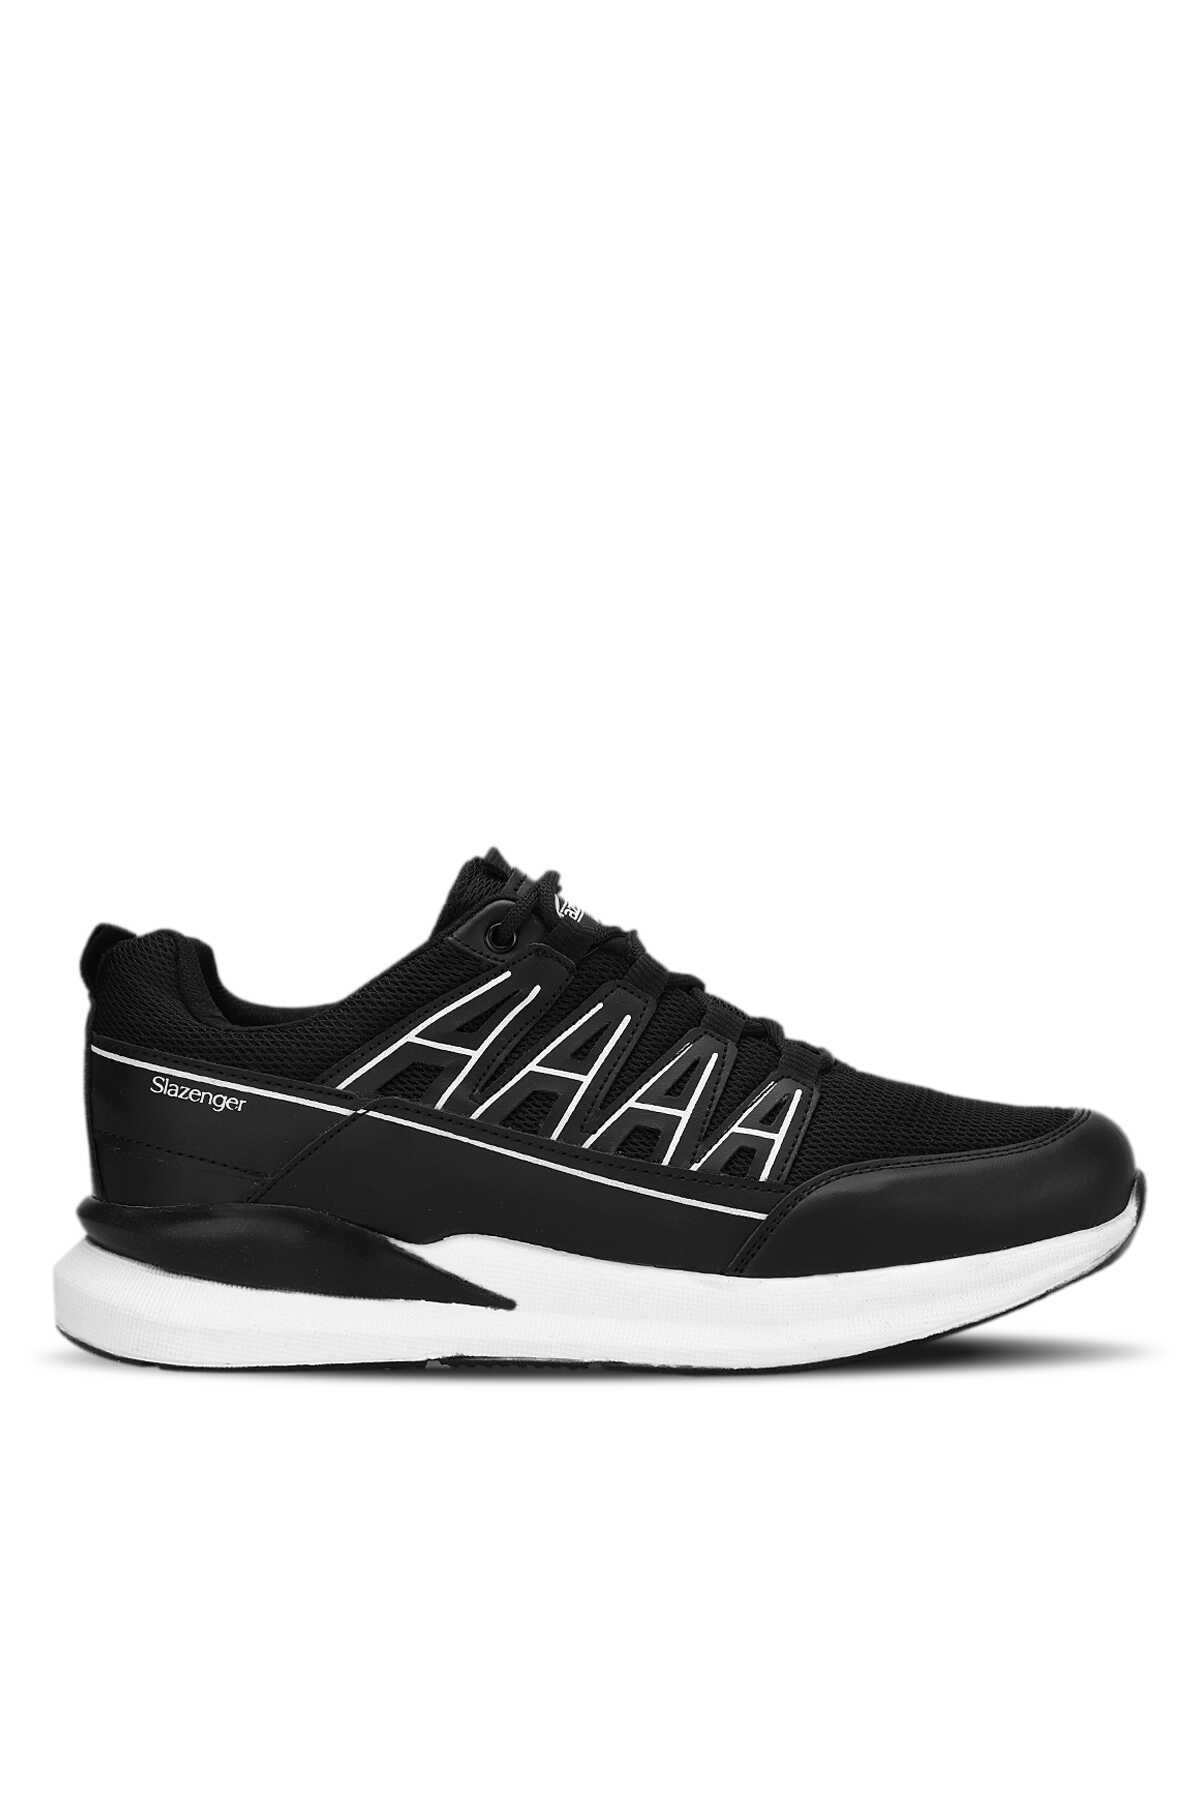 Slazenger - KIERA I Sneaker Erkek Ayakkabı Siyah / Beyaz